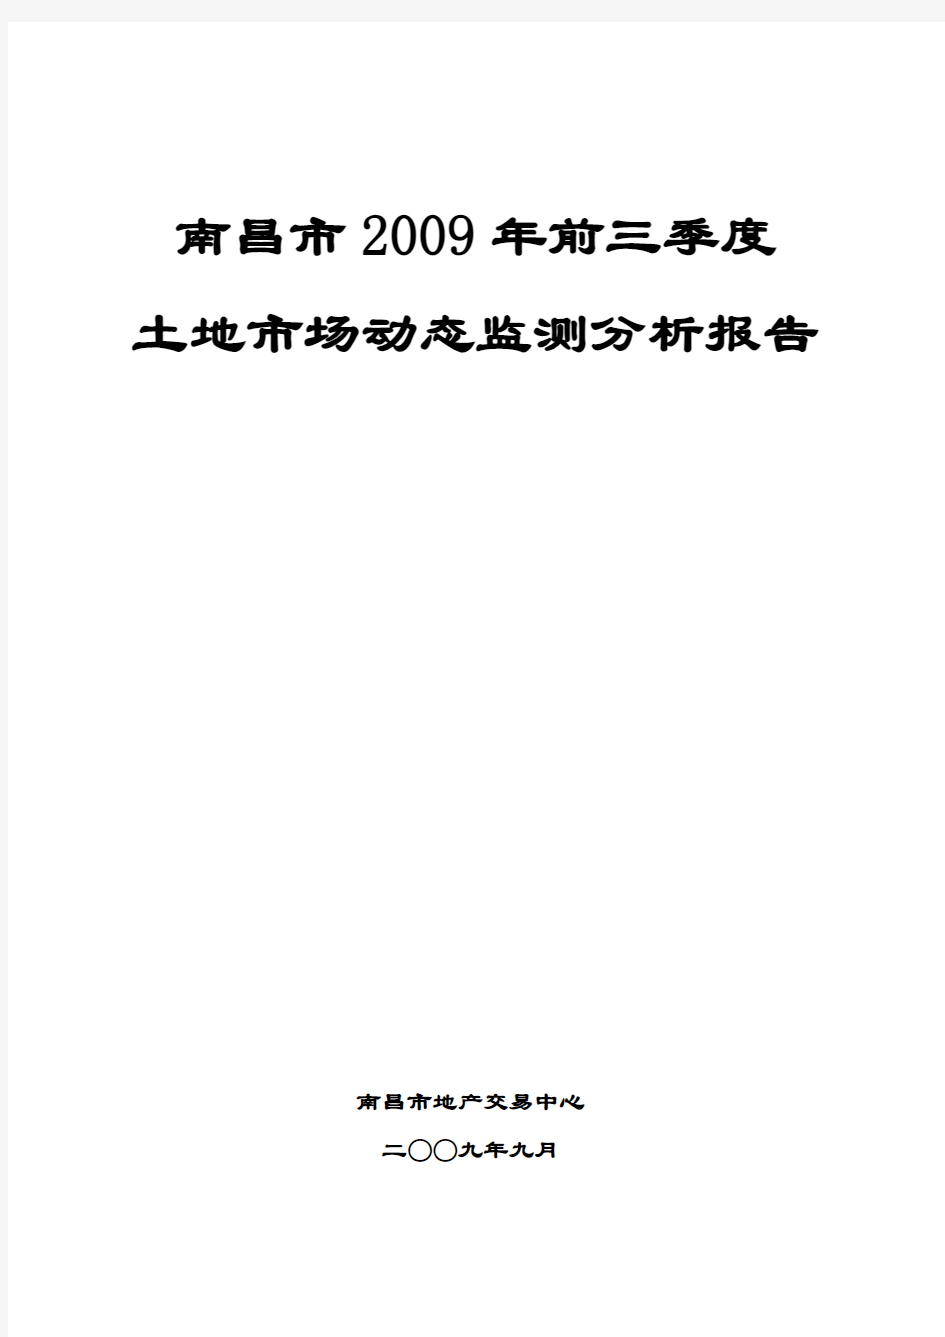 南昌市2009年前三季度土地市场动态监测分析报告